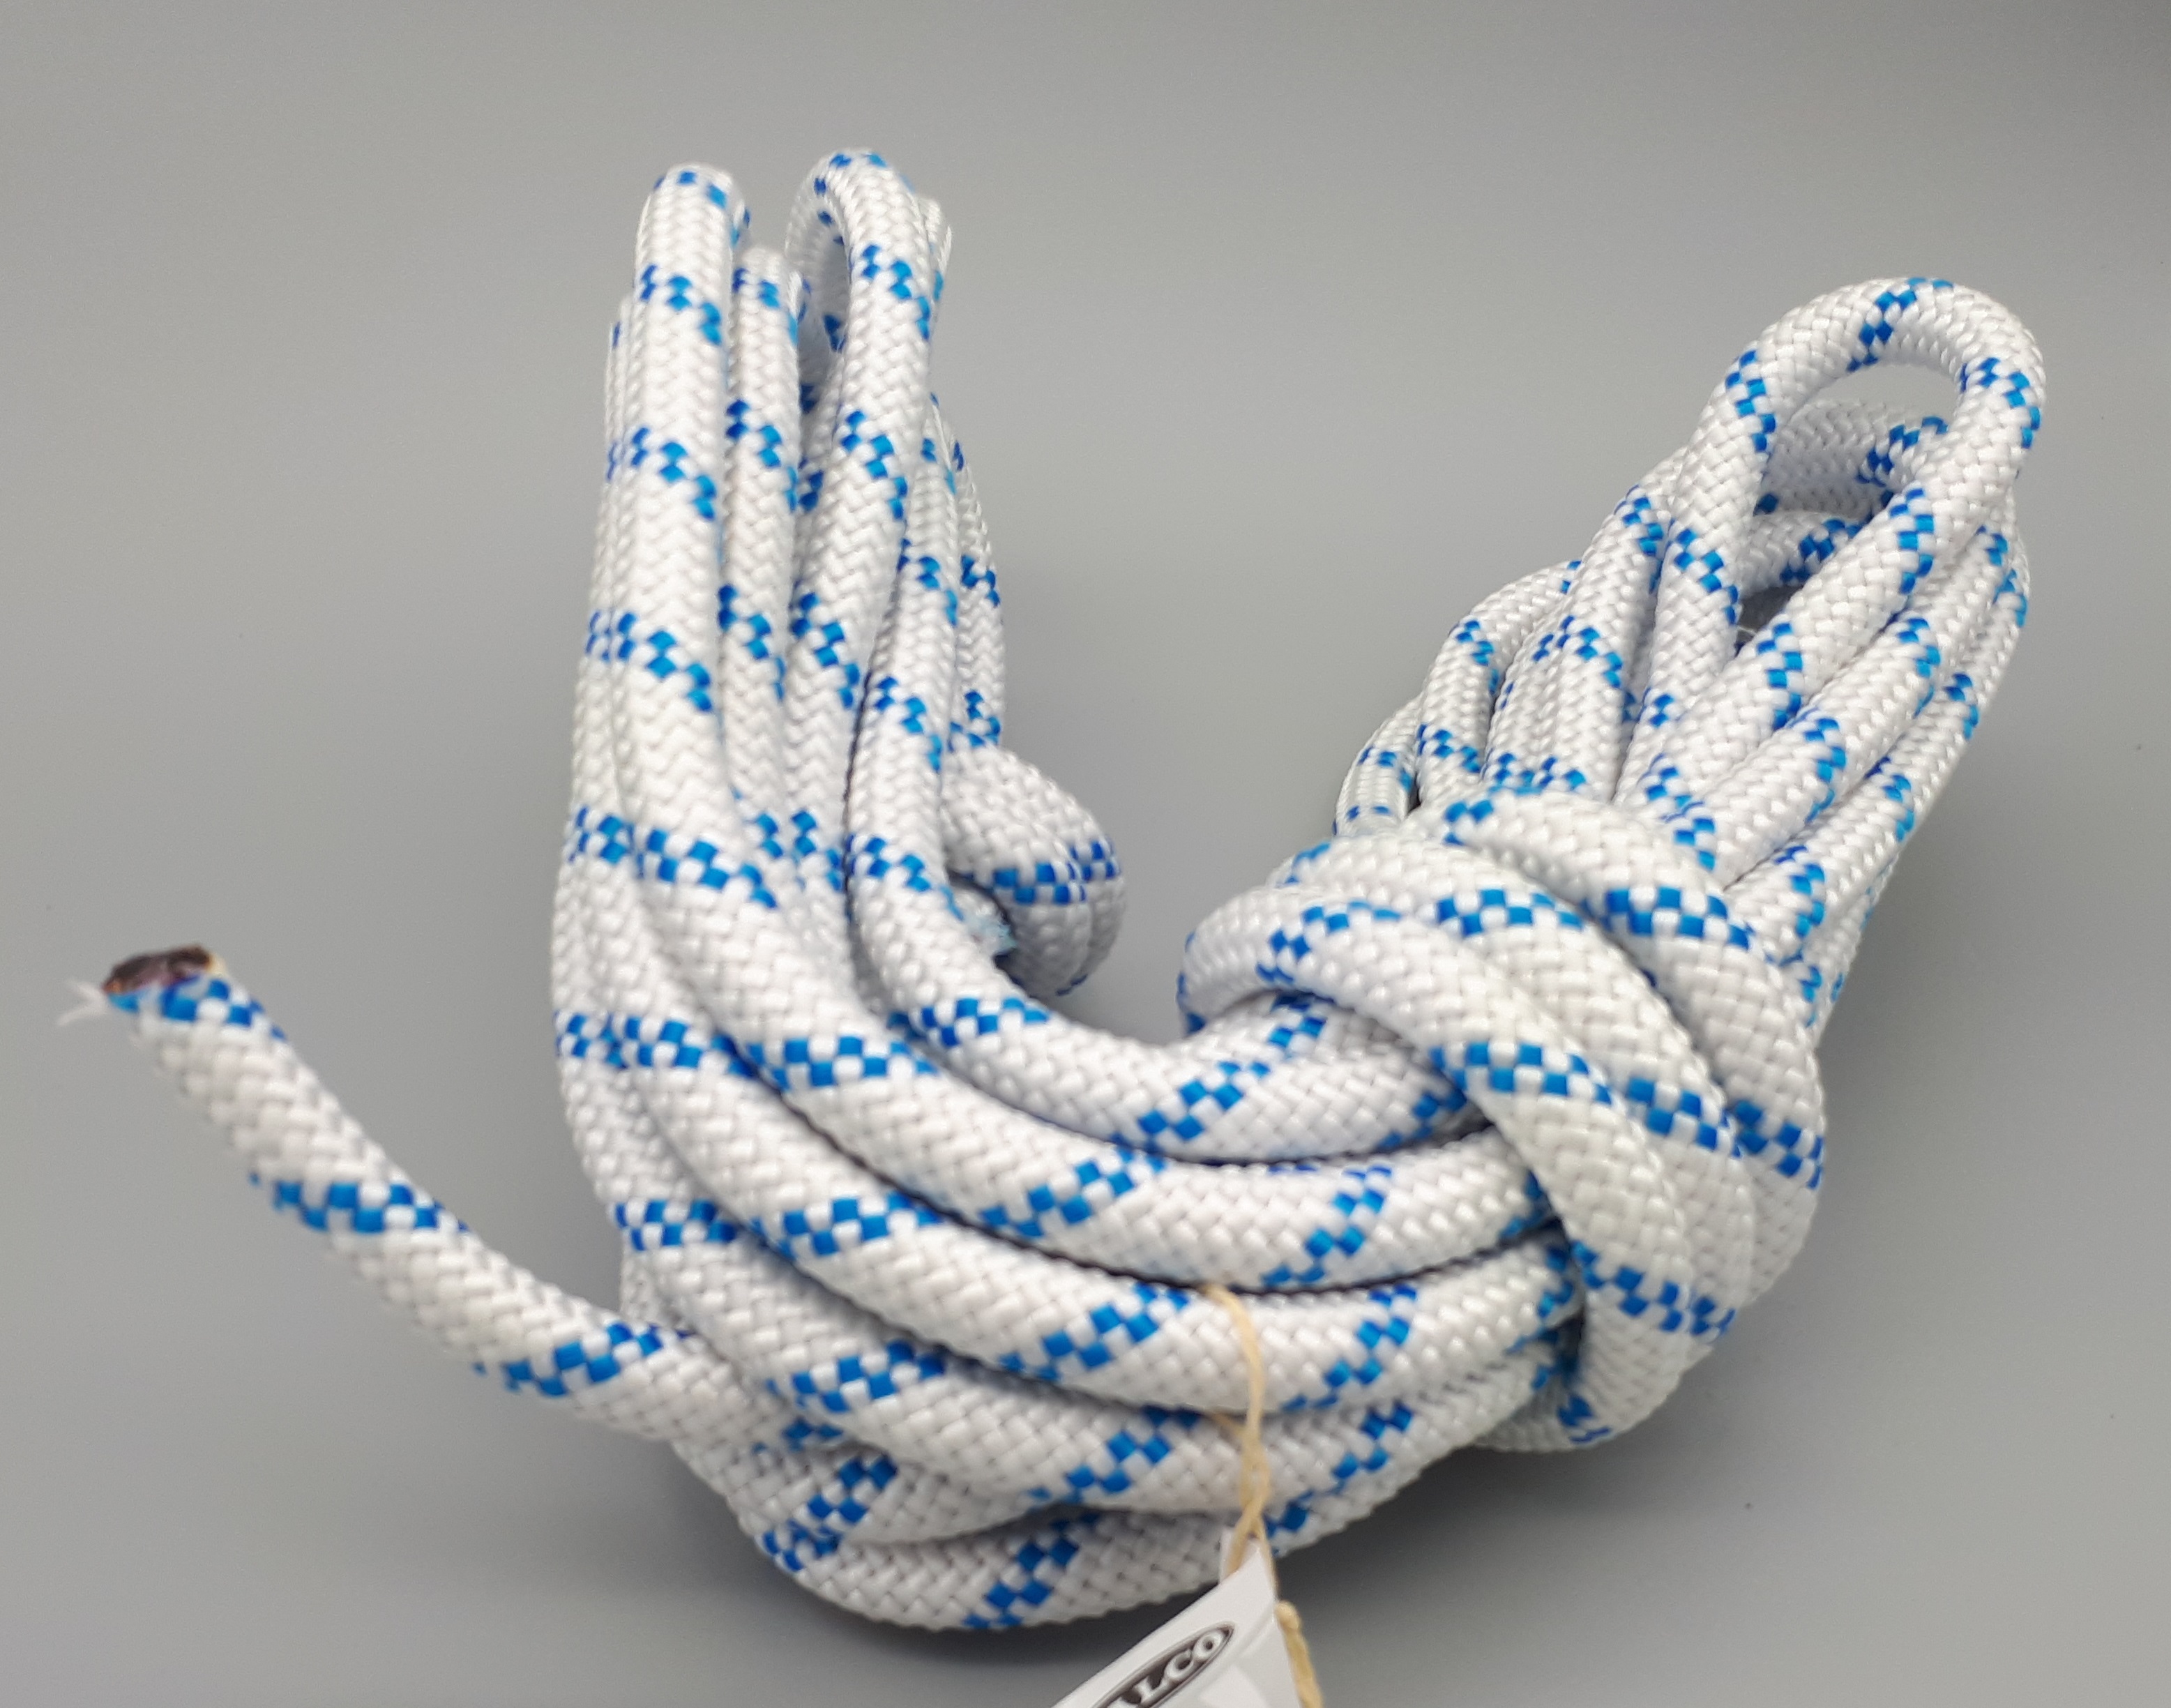 Cut rope 3 mm diameter/10 m